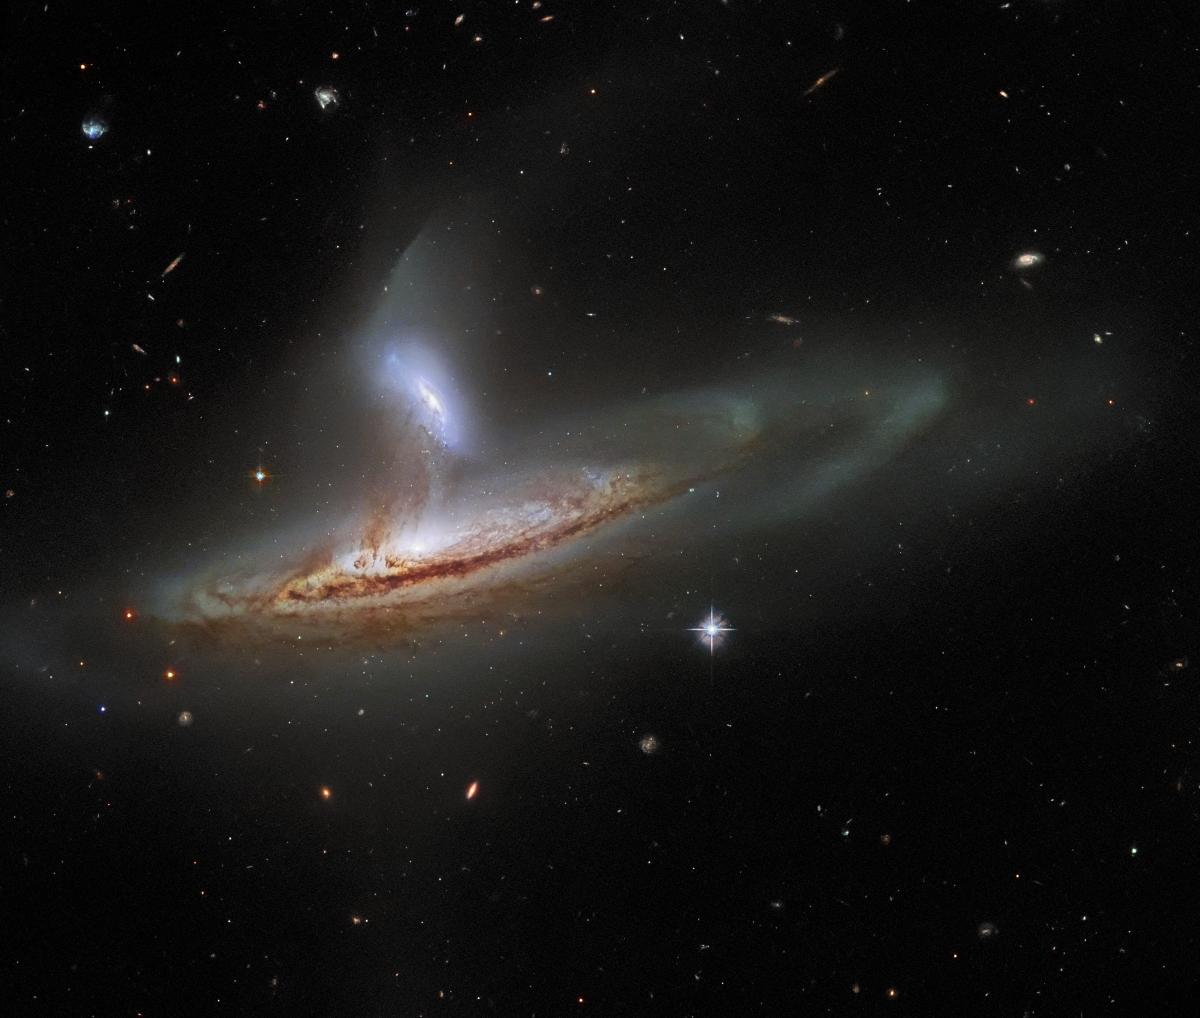 Рідко можна отримати зображення двох галактик, які взаємодіють у такий помітно динамічний спосіб / фото ESA/Hubble & NASA, J. Dalcanton, Dark Energy Survey, DOE, FNAL/DECam, CTIO/NOIRLab/NSF/AURA, SDSS; J. Schmidt